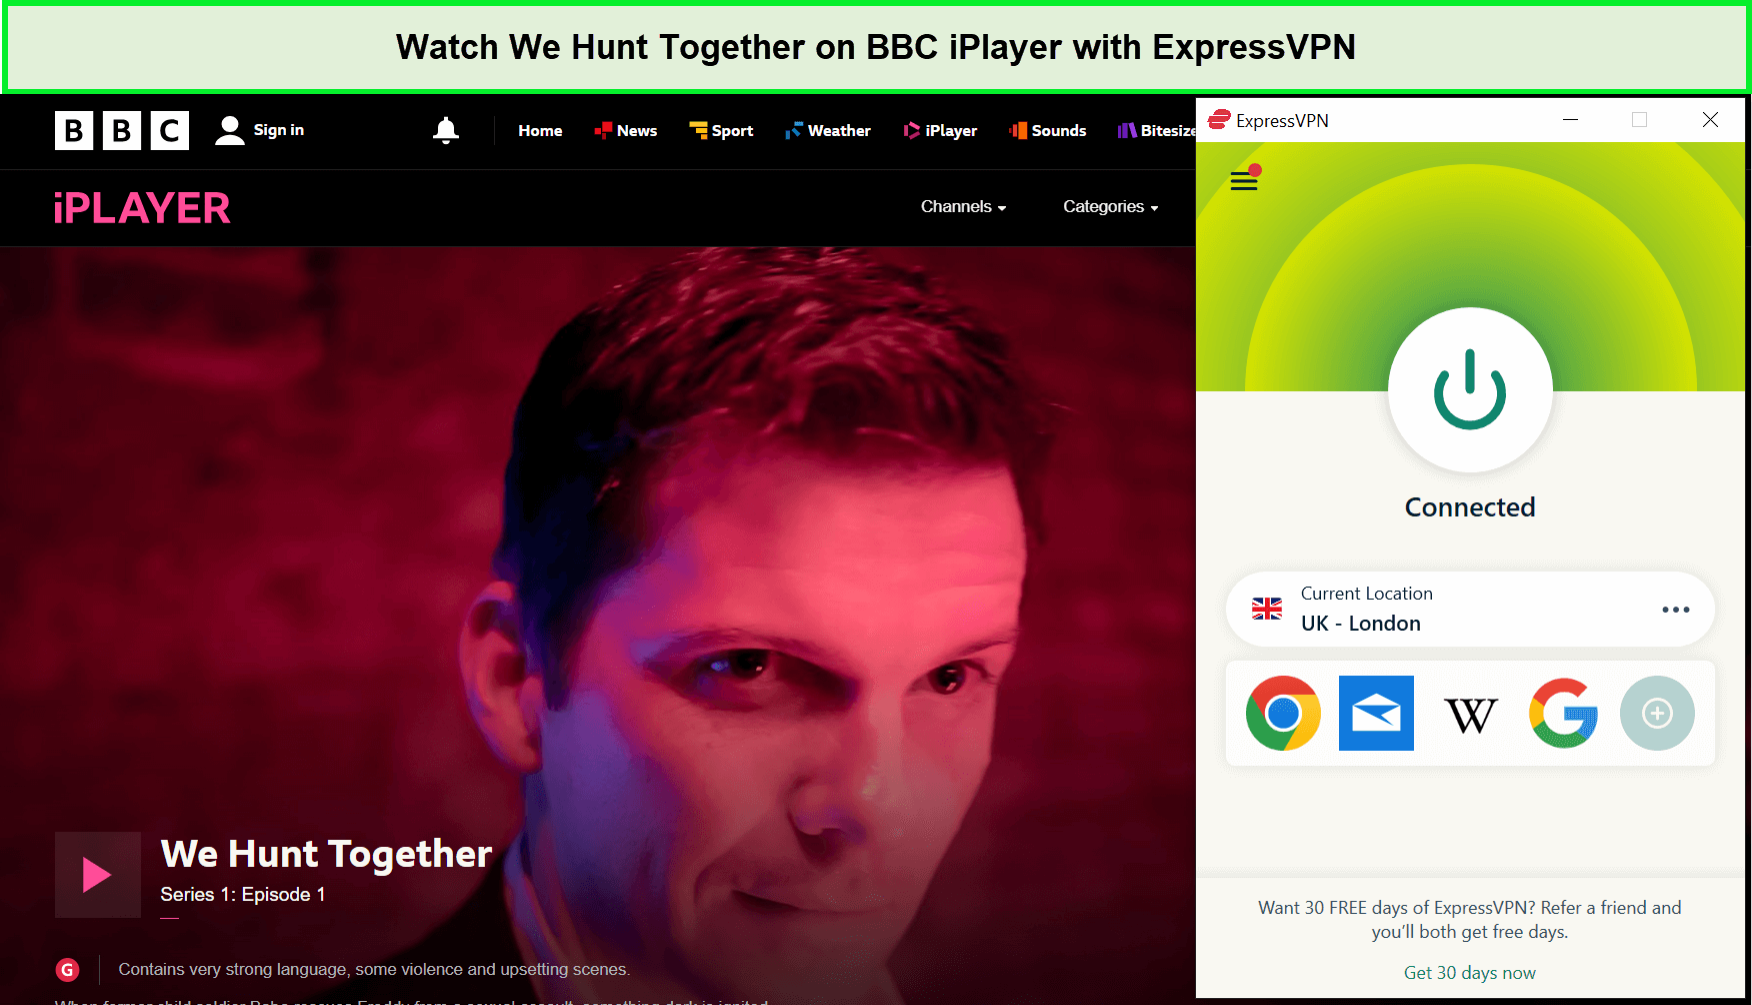 Watch-We-Hunt-Together-in-Netherlandson-BBC-iPlayer-with-ExpressVPN